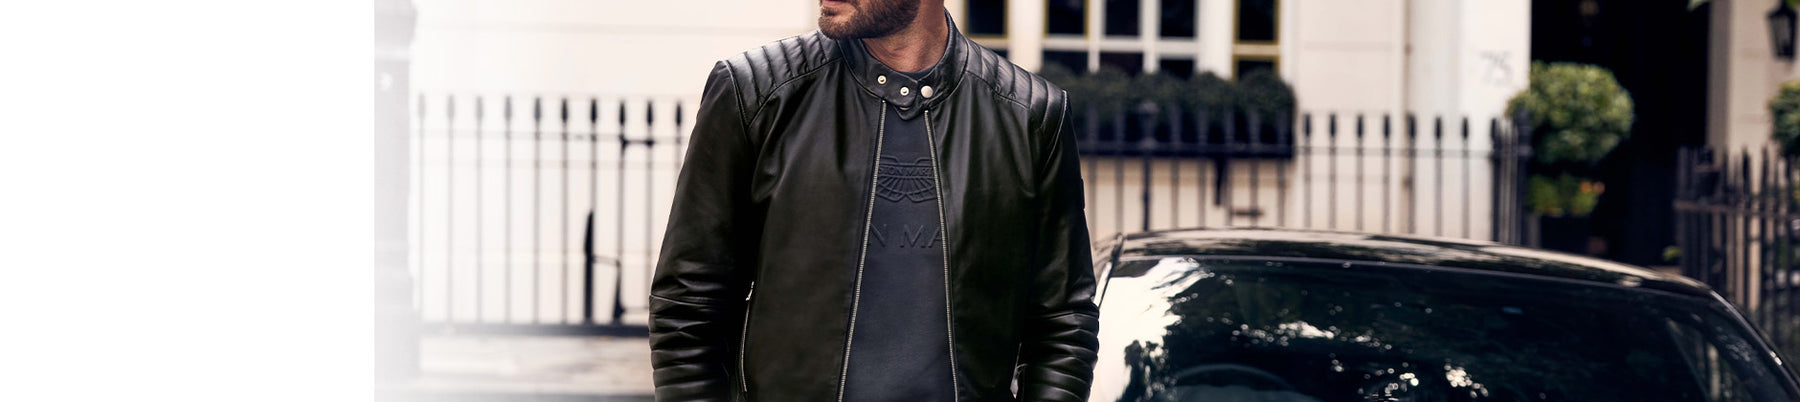 Hackett London men's field jacket / blazer / Size XL / black color / Hackett  | eBay